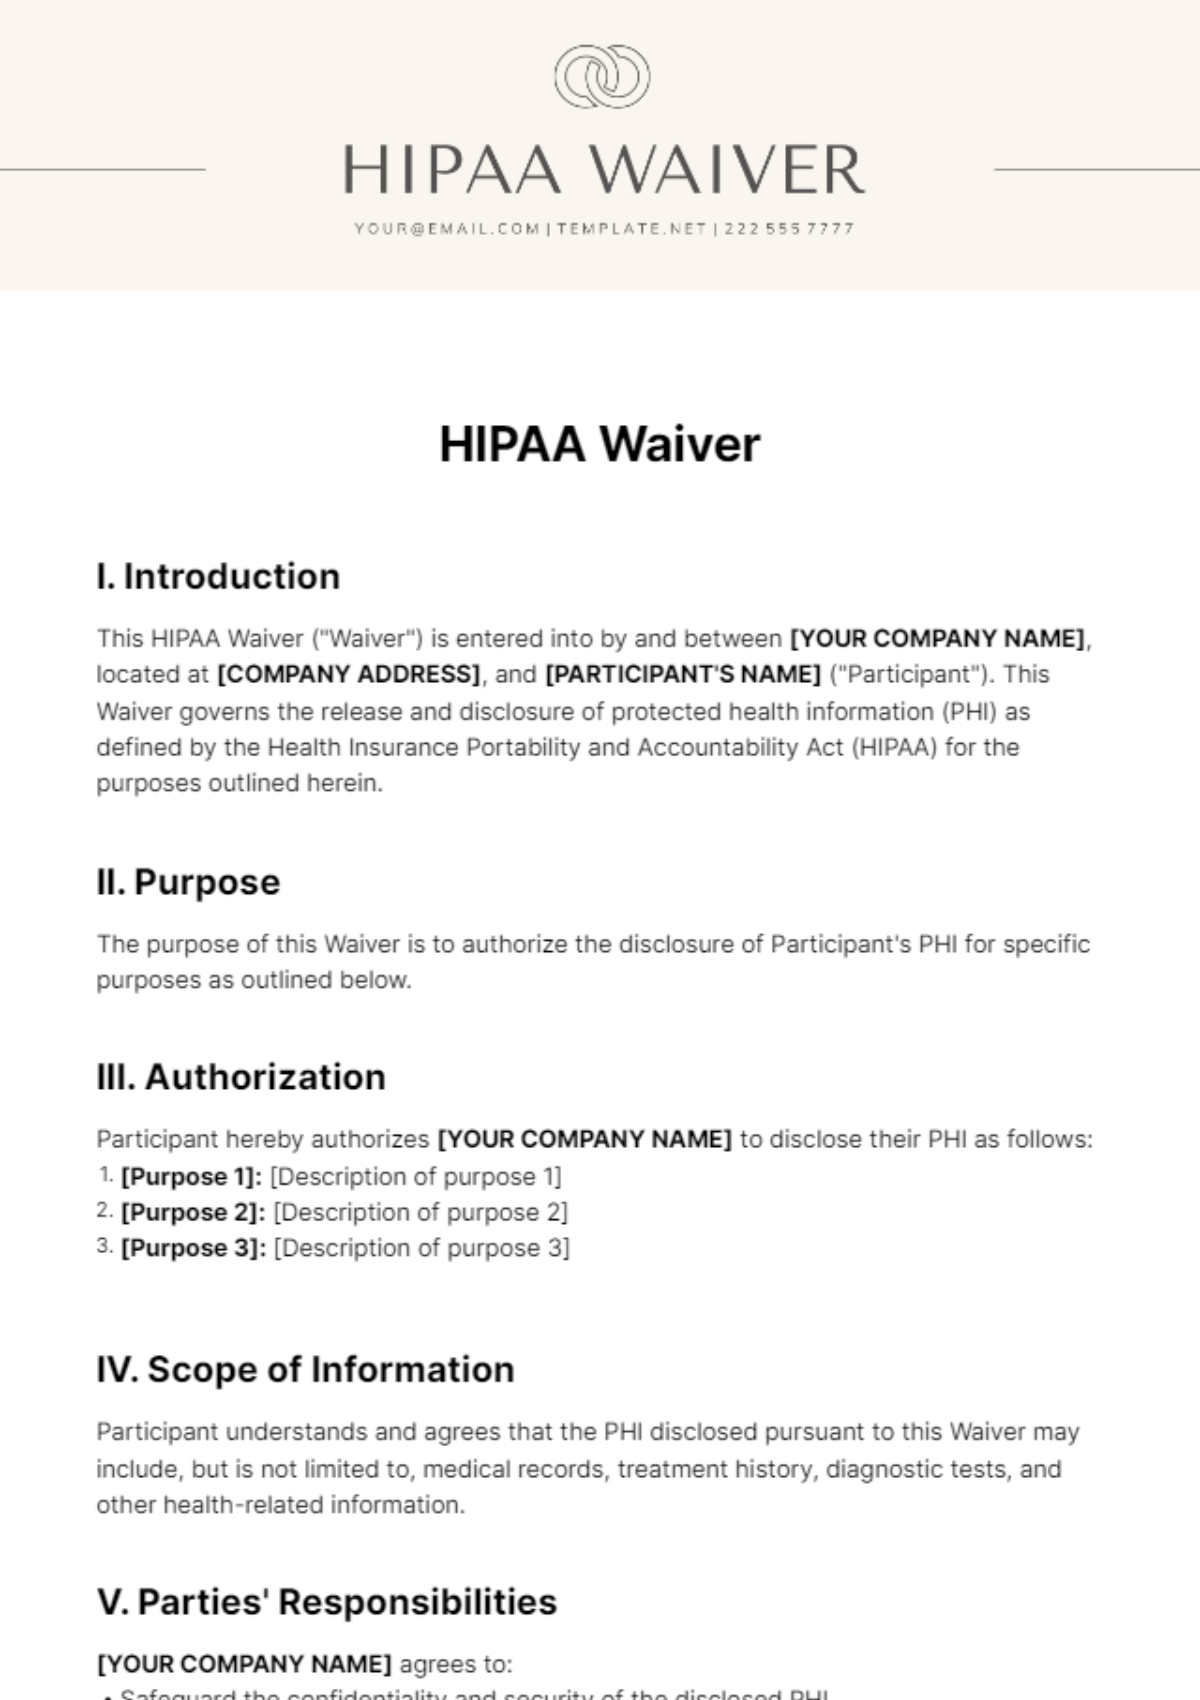 HIPAA Waiver Template